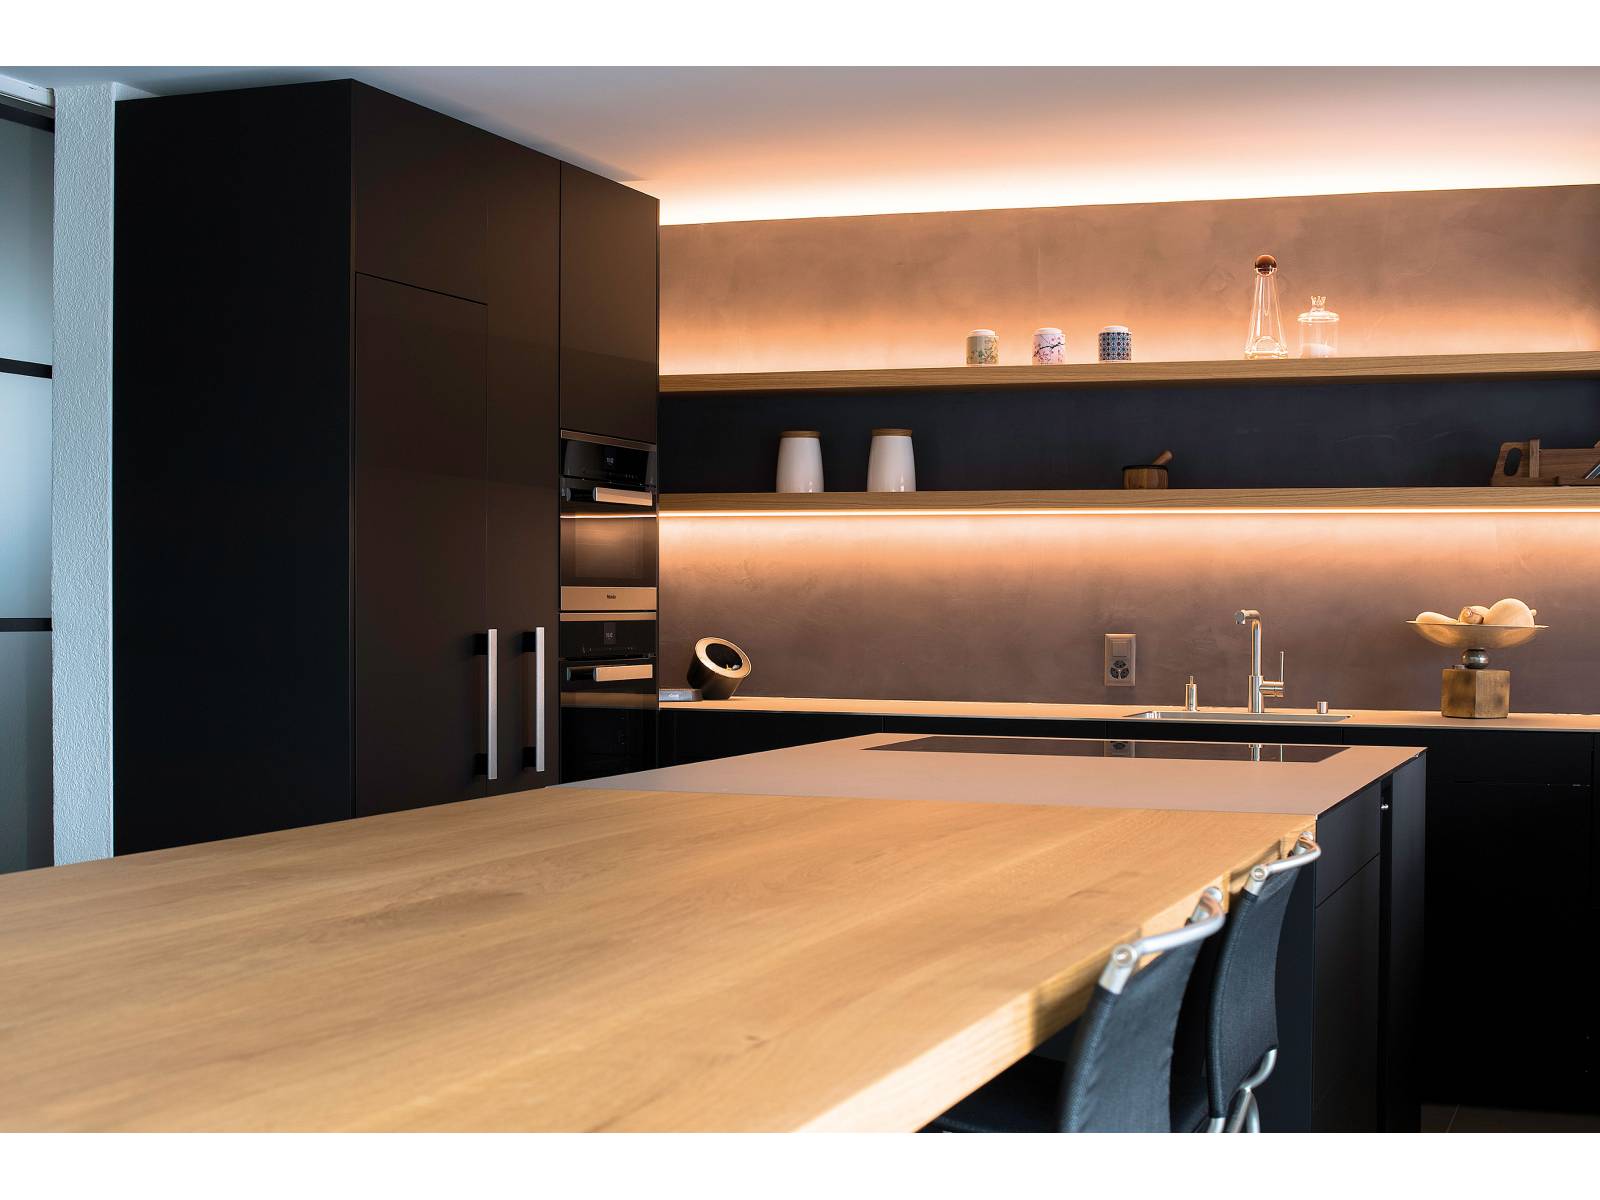 Holz, Rohmetall und Edelstahl sind die Hauptelemente für diese Küche. Stimmige Lichteffekte sorgen für eine wohnliche Atmosphäre, was durch gekonnt platzierte Küchen- und Wohnaccessoires noch unterstrichen wird. Oesch Innenausbau.